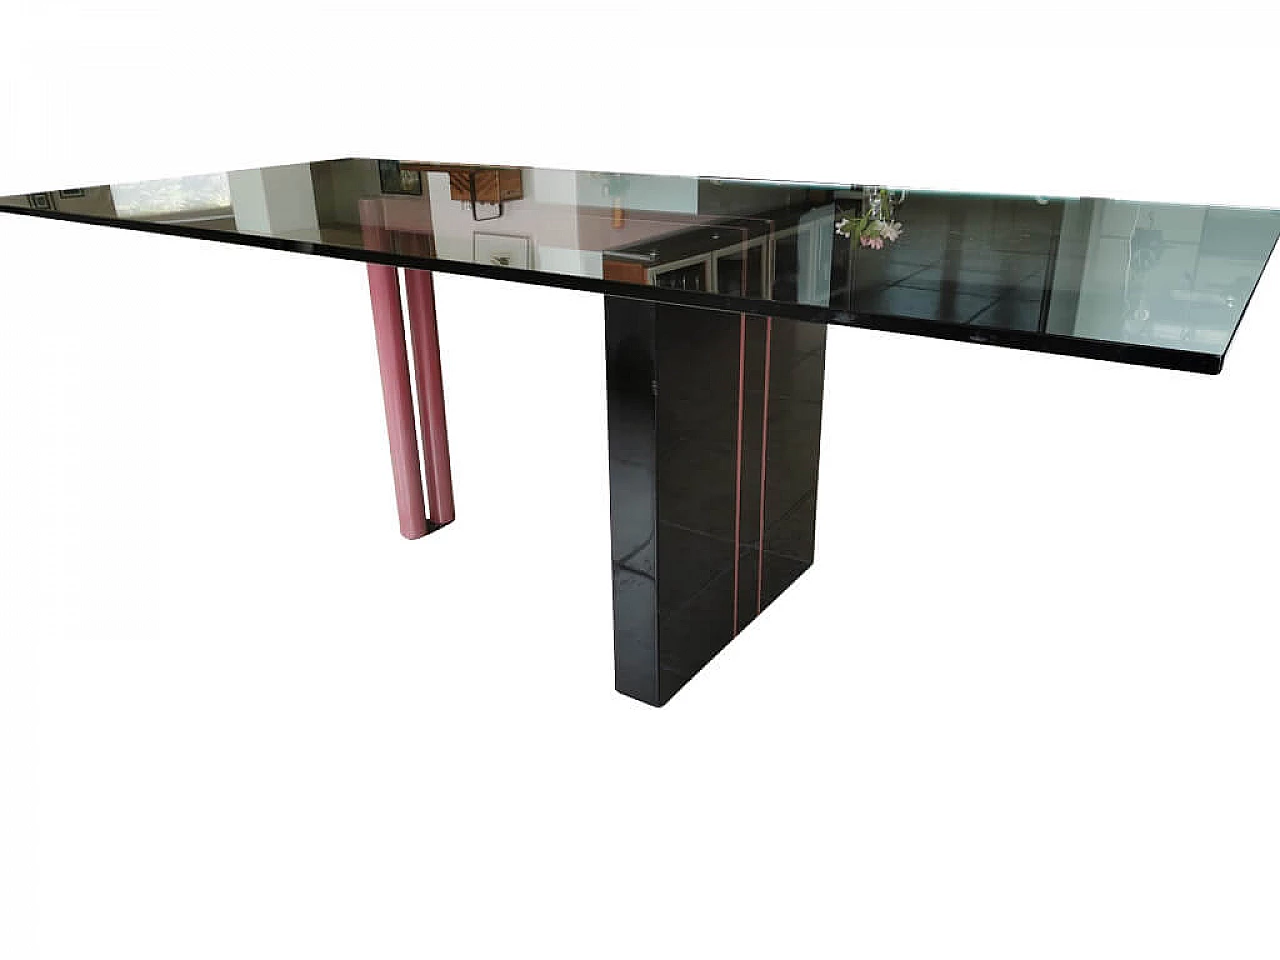 Irwin glass dining table by Franco Passarello for Saporiti Italia, 1980s 1258578